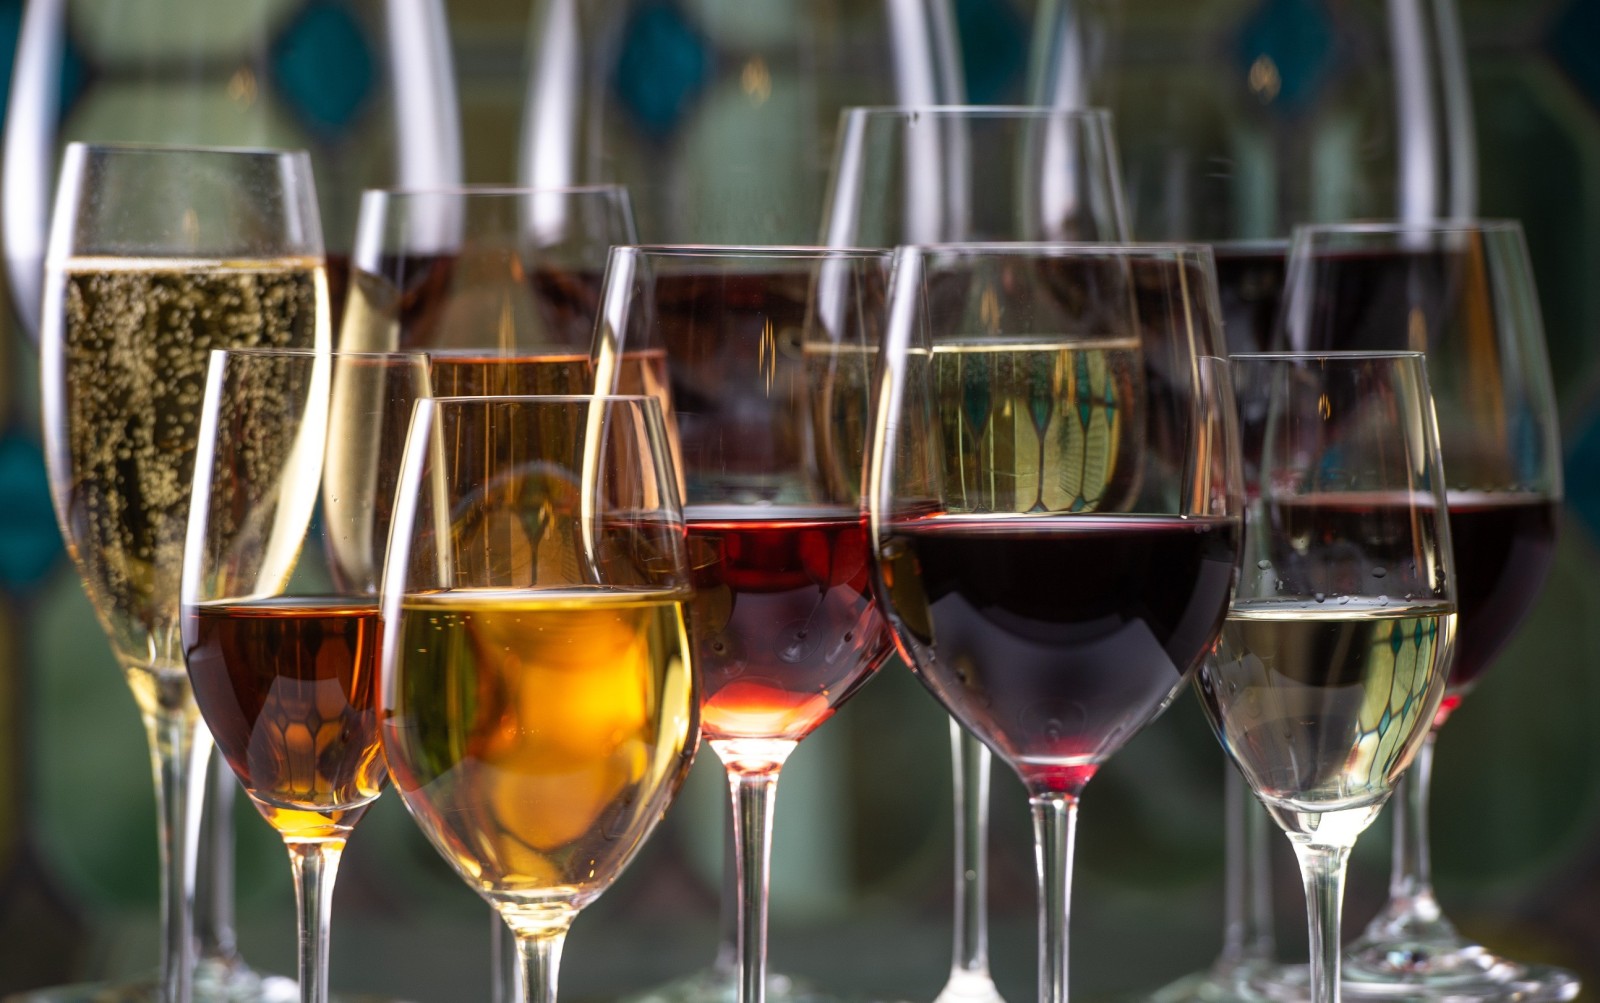 Produzione globale di vino rosso in calo del 25% dal 2004 - Meno vino rosso in Europa, crescita all'estero